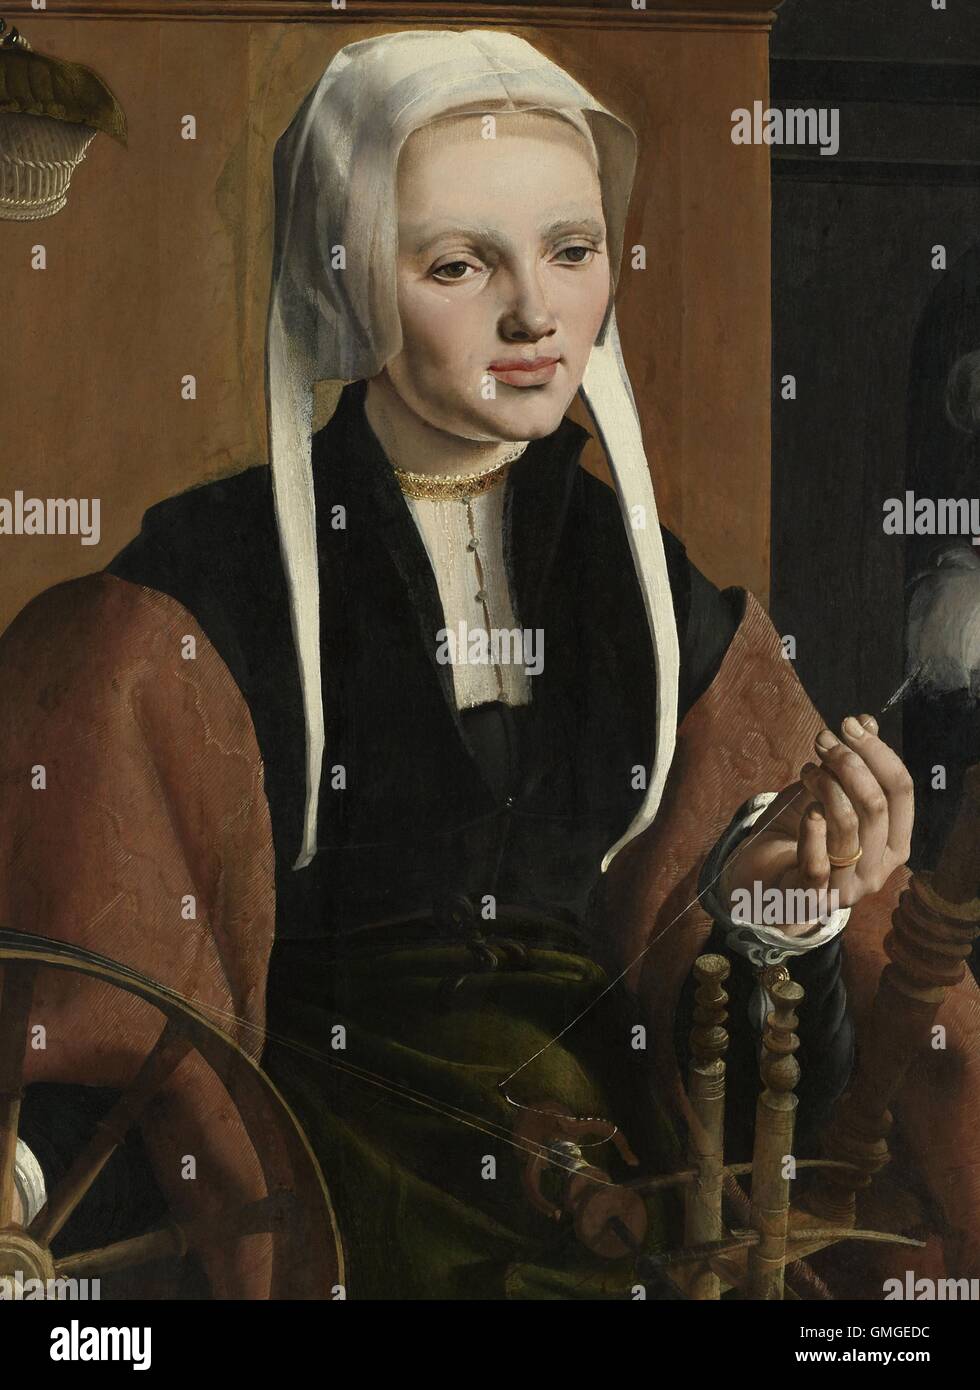 Anne Codde, Ehefrau von Pieter Gerritsz Bicker, von Maarten van Heemskerck, 1529, niederländische Malerei, Öl auf Holz. Sitzen in einer Spinnerei Stockfoto